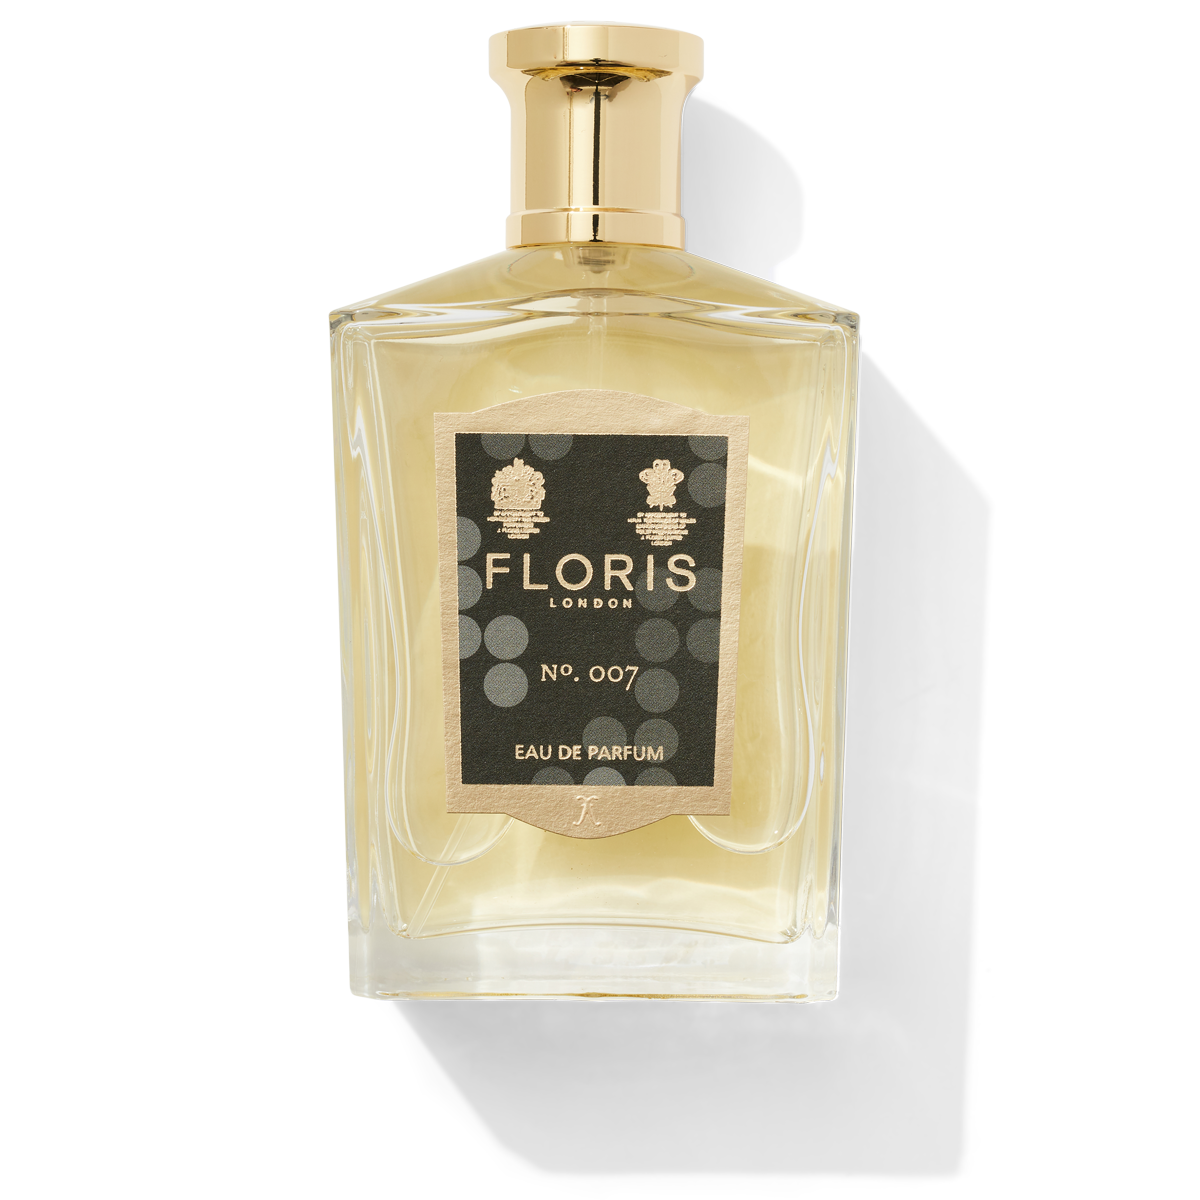 Floris London No.007 Eau de Parfum glass bottle